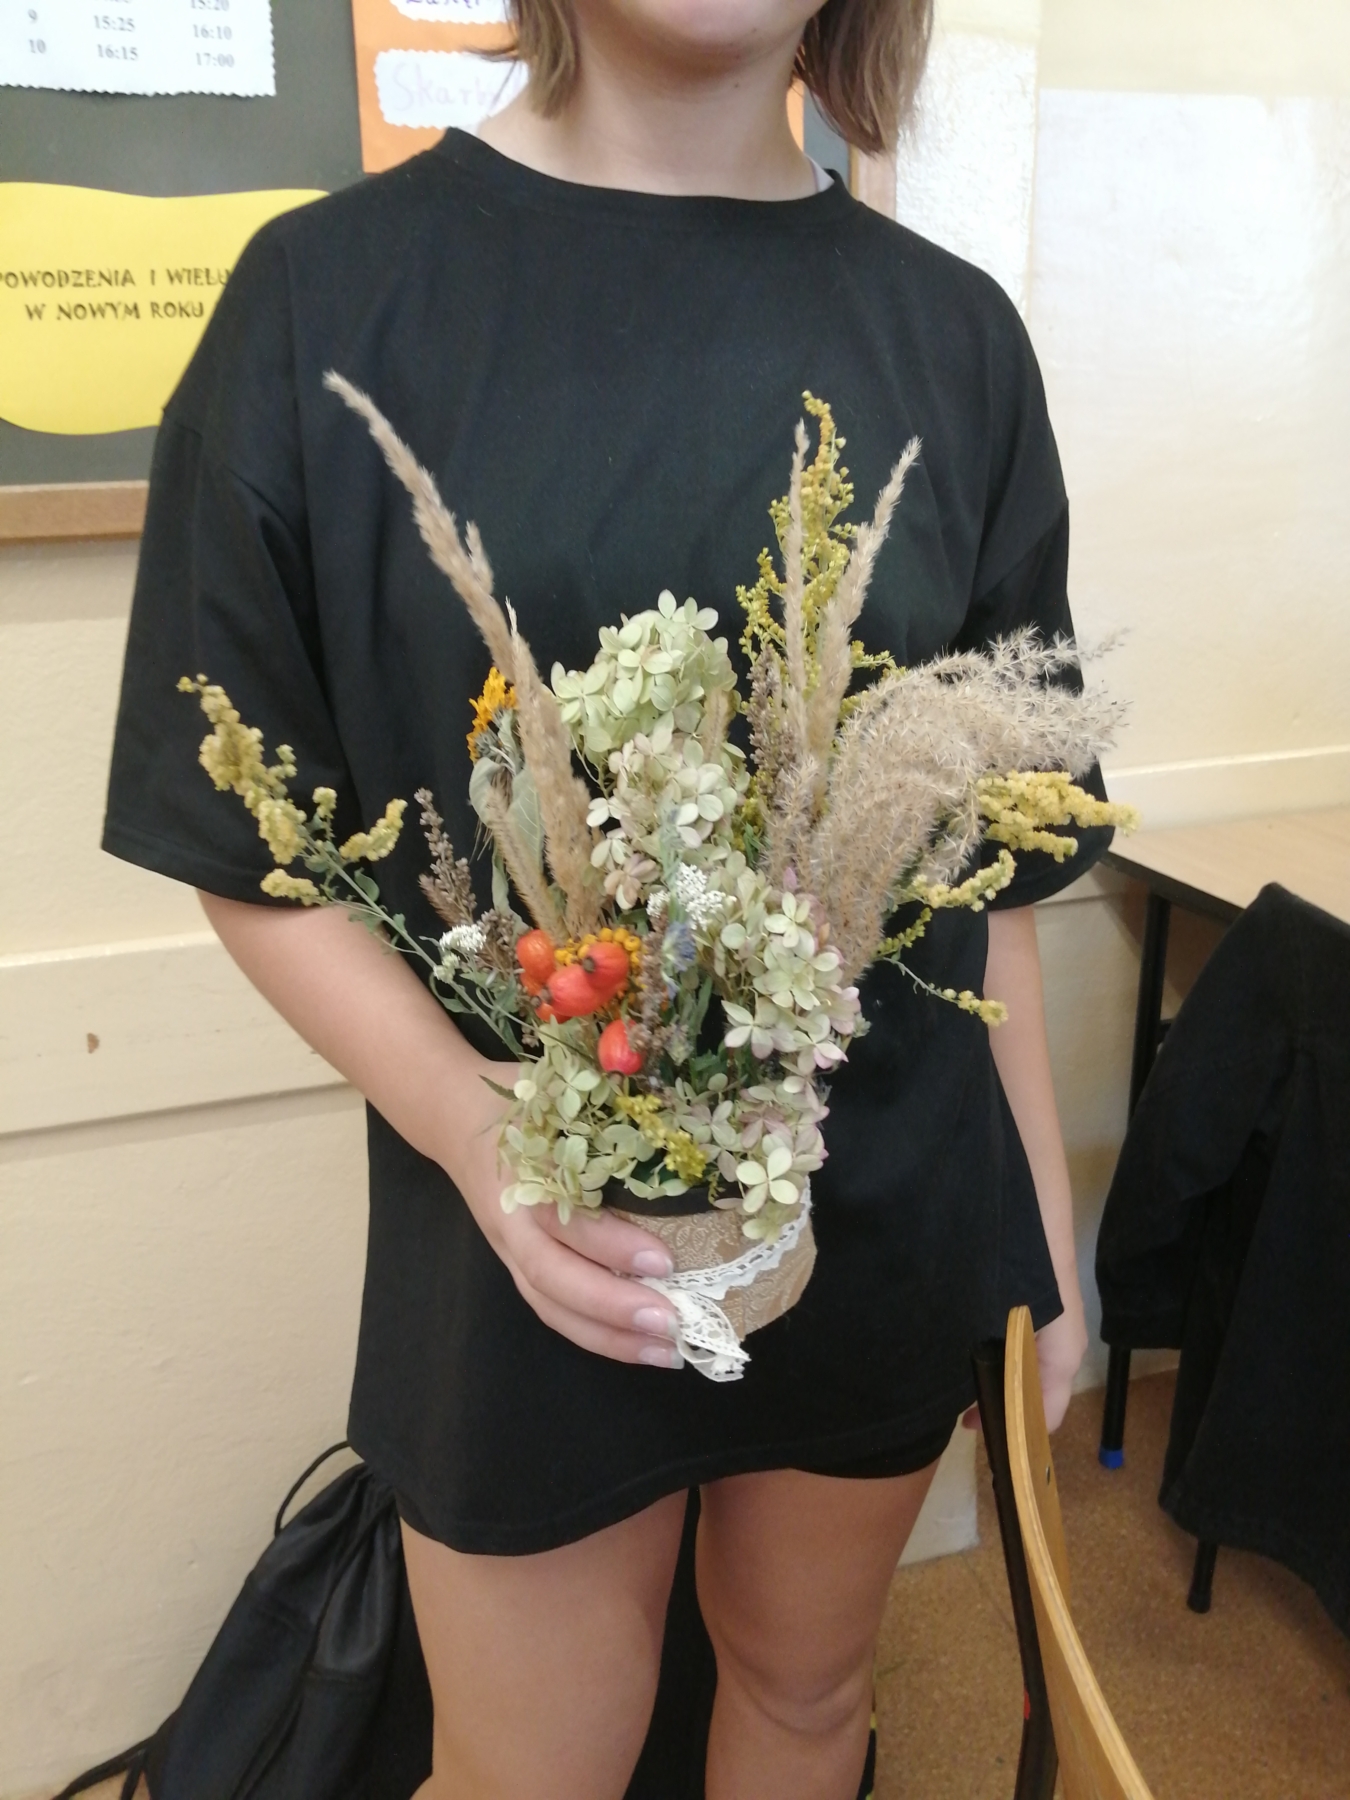 Uczennica prezentuje wykonaną przez siebie kwiatową kompozycję